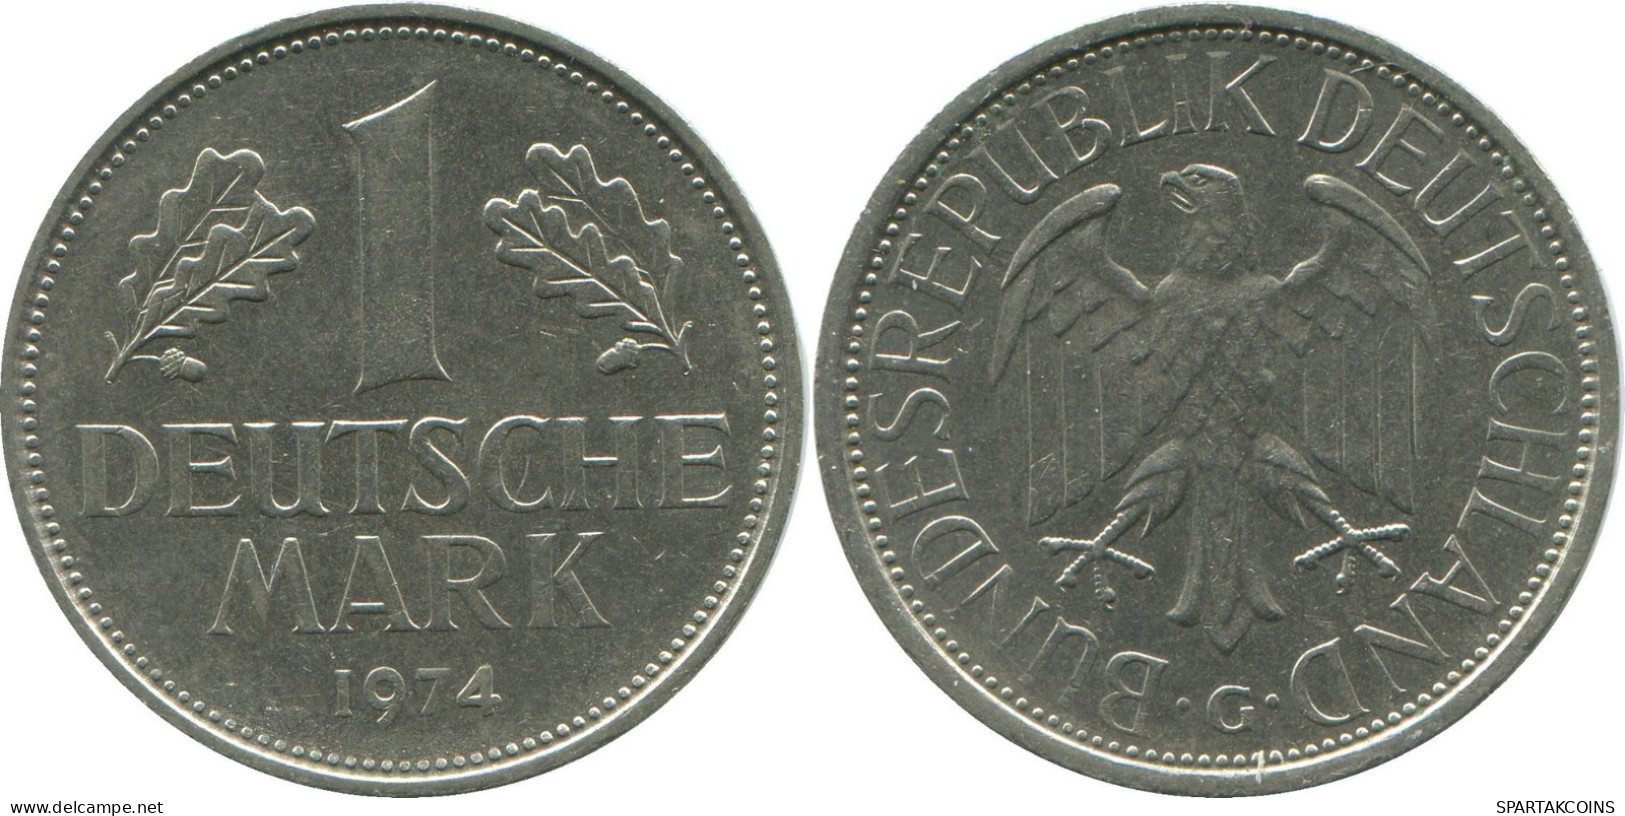 1 MARK 1974 G BRD ALEMANIA Moneda GERMANY #DE10417.5.E.A - 1 Mark